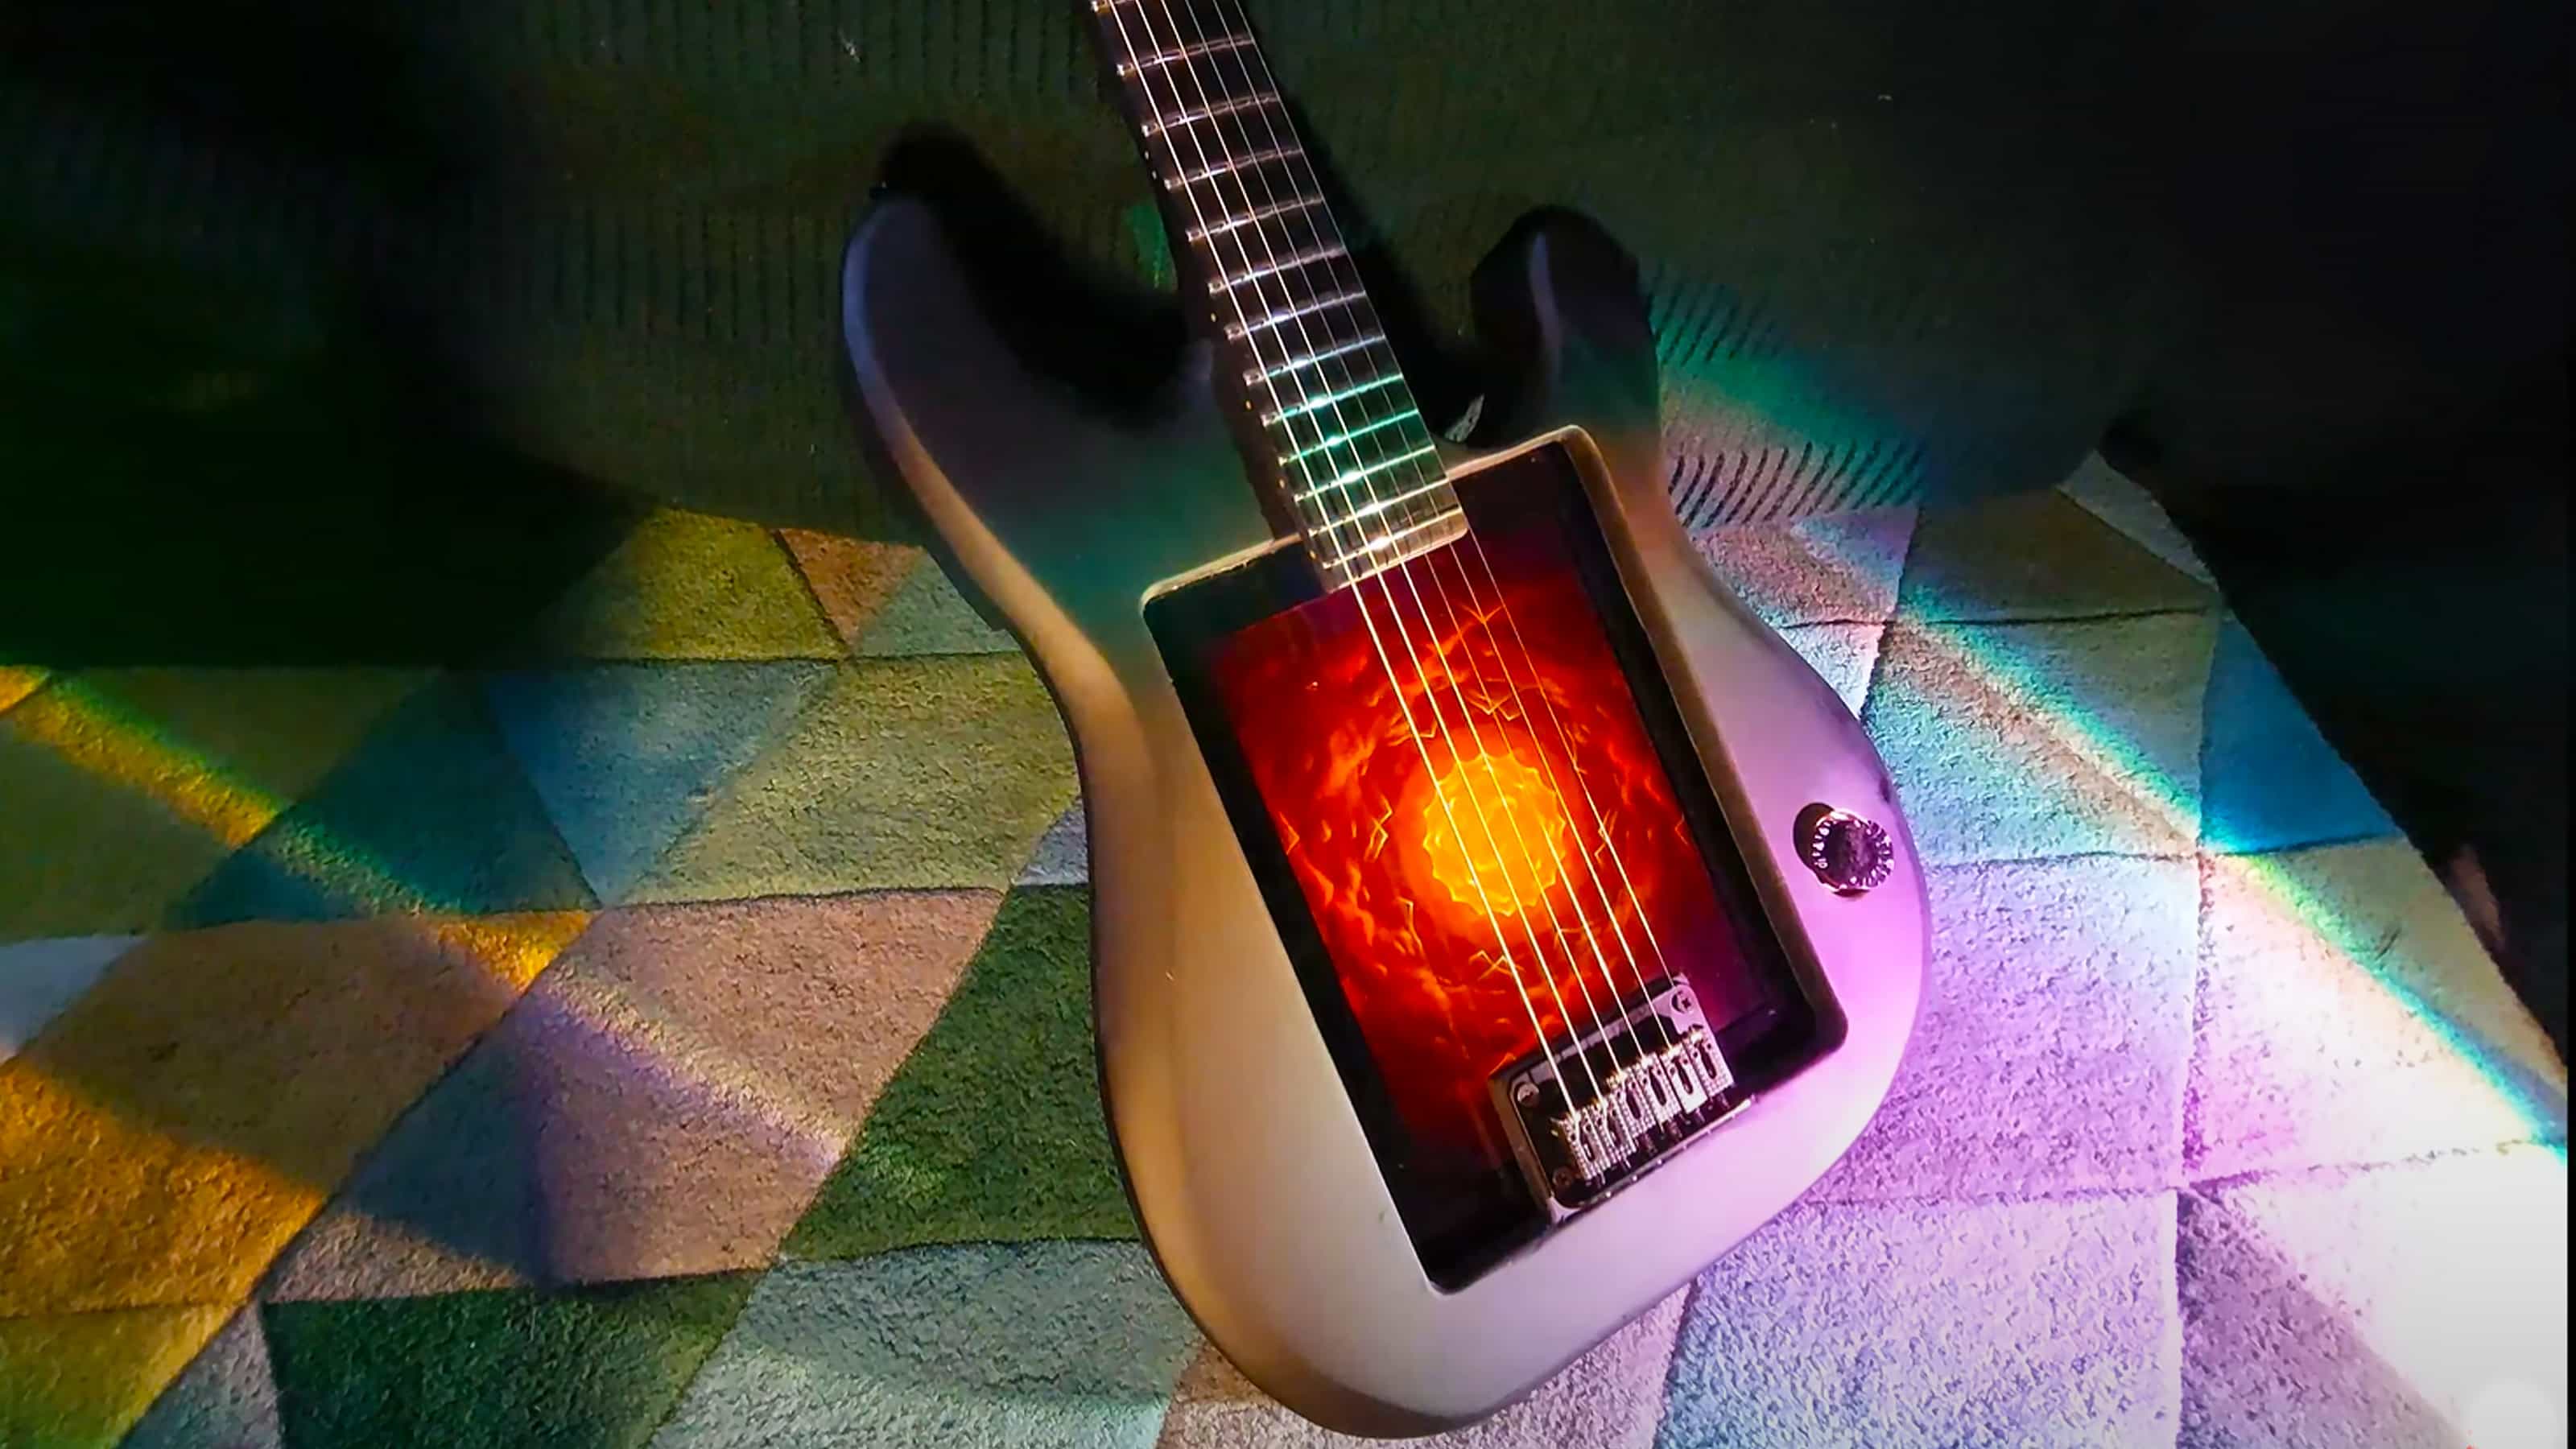 Por supuesto, alguien construyó un iPad en una guitarra